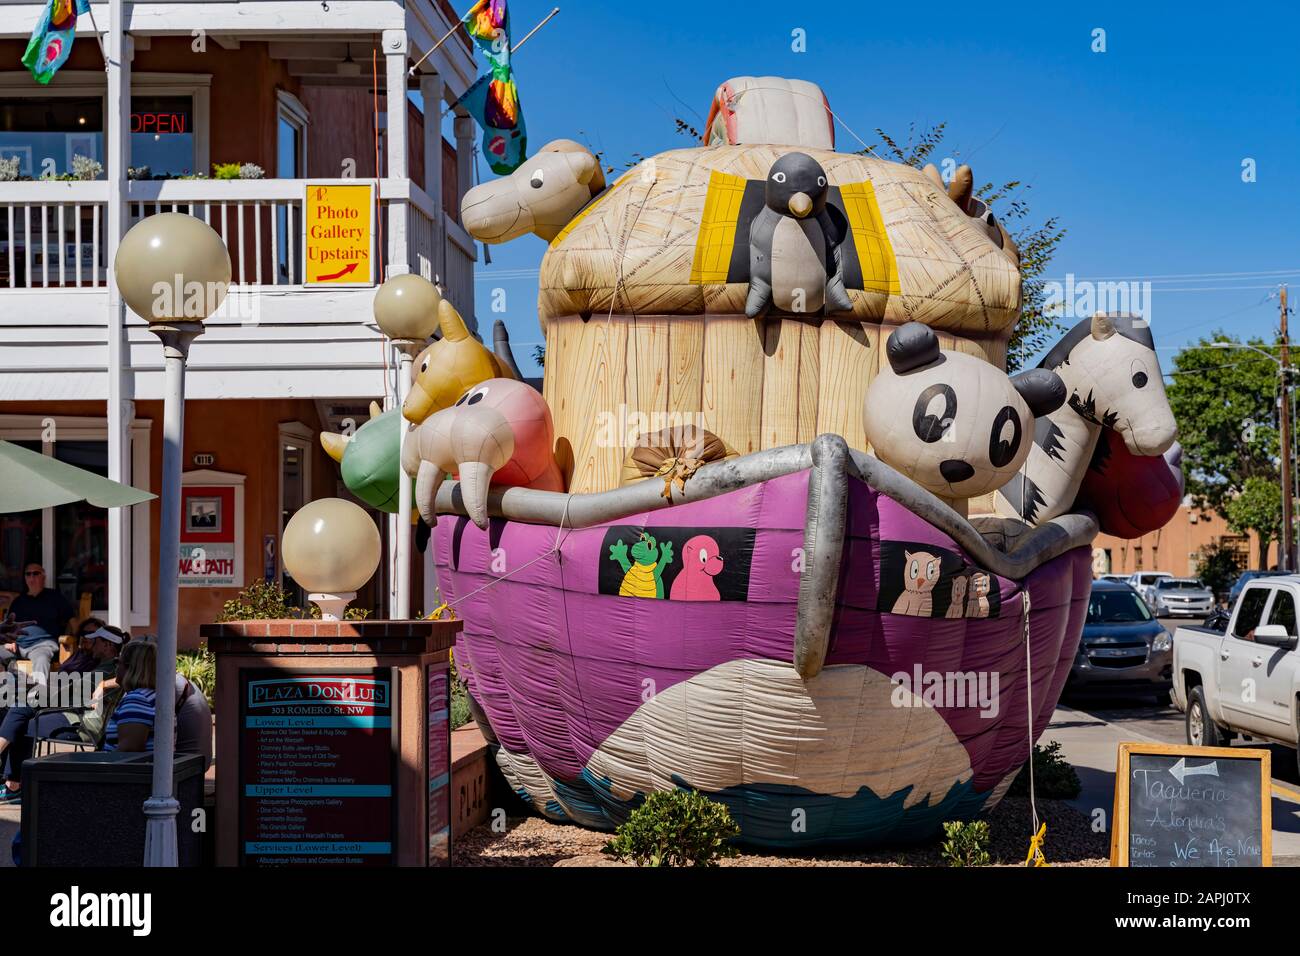 Albuquerque, OCT 5: Grand jouet gonflable sur la Plaza Don Luis le 5 OCT 2019 à Albuquerque, Nouveau-Mexique Banque D'Images